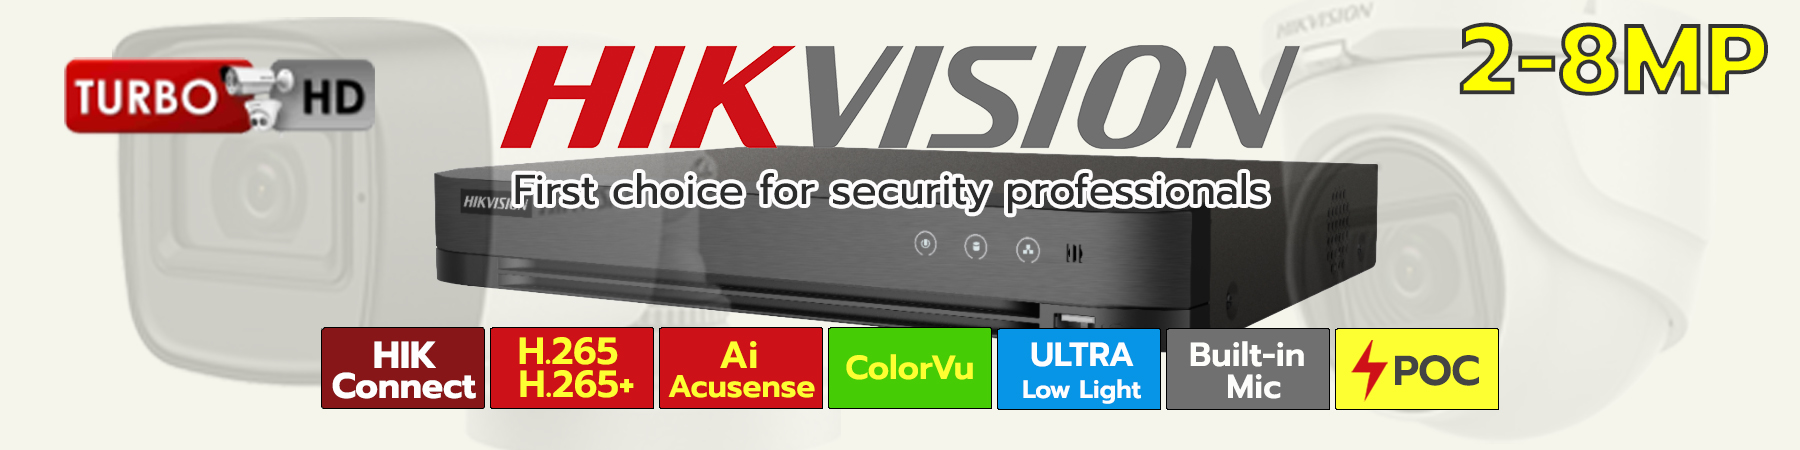 ชุดกล้อง Hikvision HDTVI, ชุดกล้อง Hikvision ไมค์ในตัว, ชุดกล้อง Hikvision ColorVu, ชุดกล้อง Hikvision Ultra Low Light, ชุดกล้อง Hikvision PoC